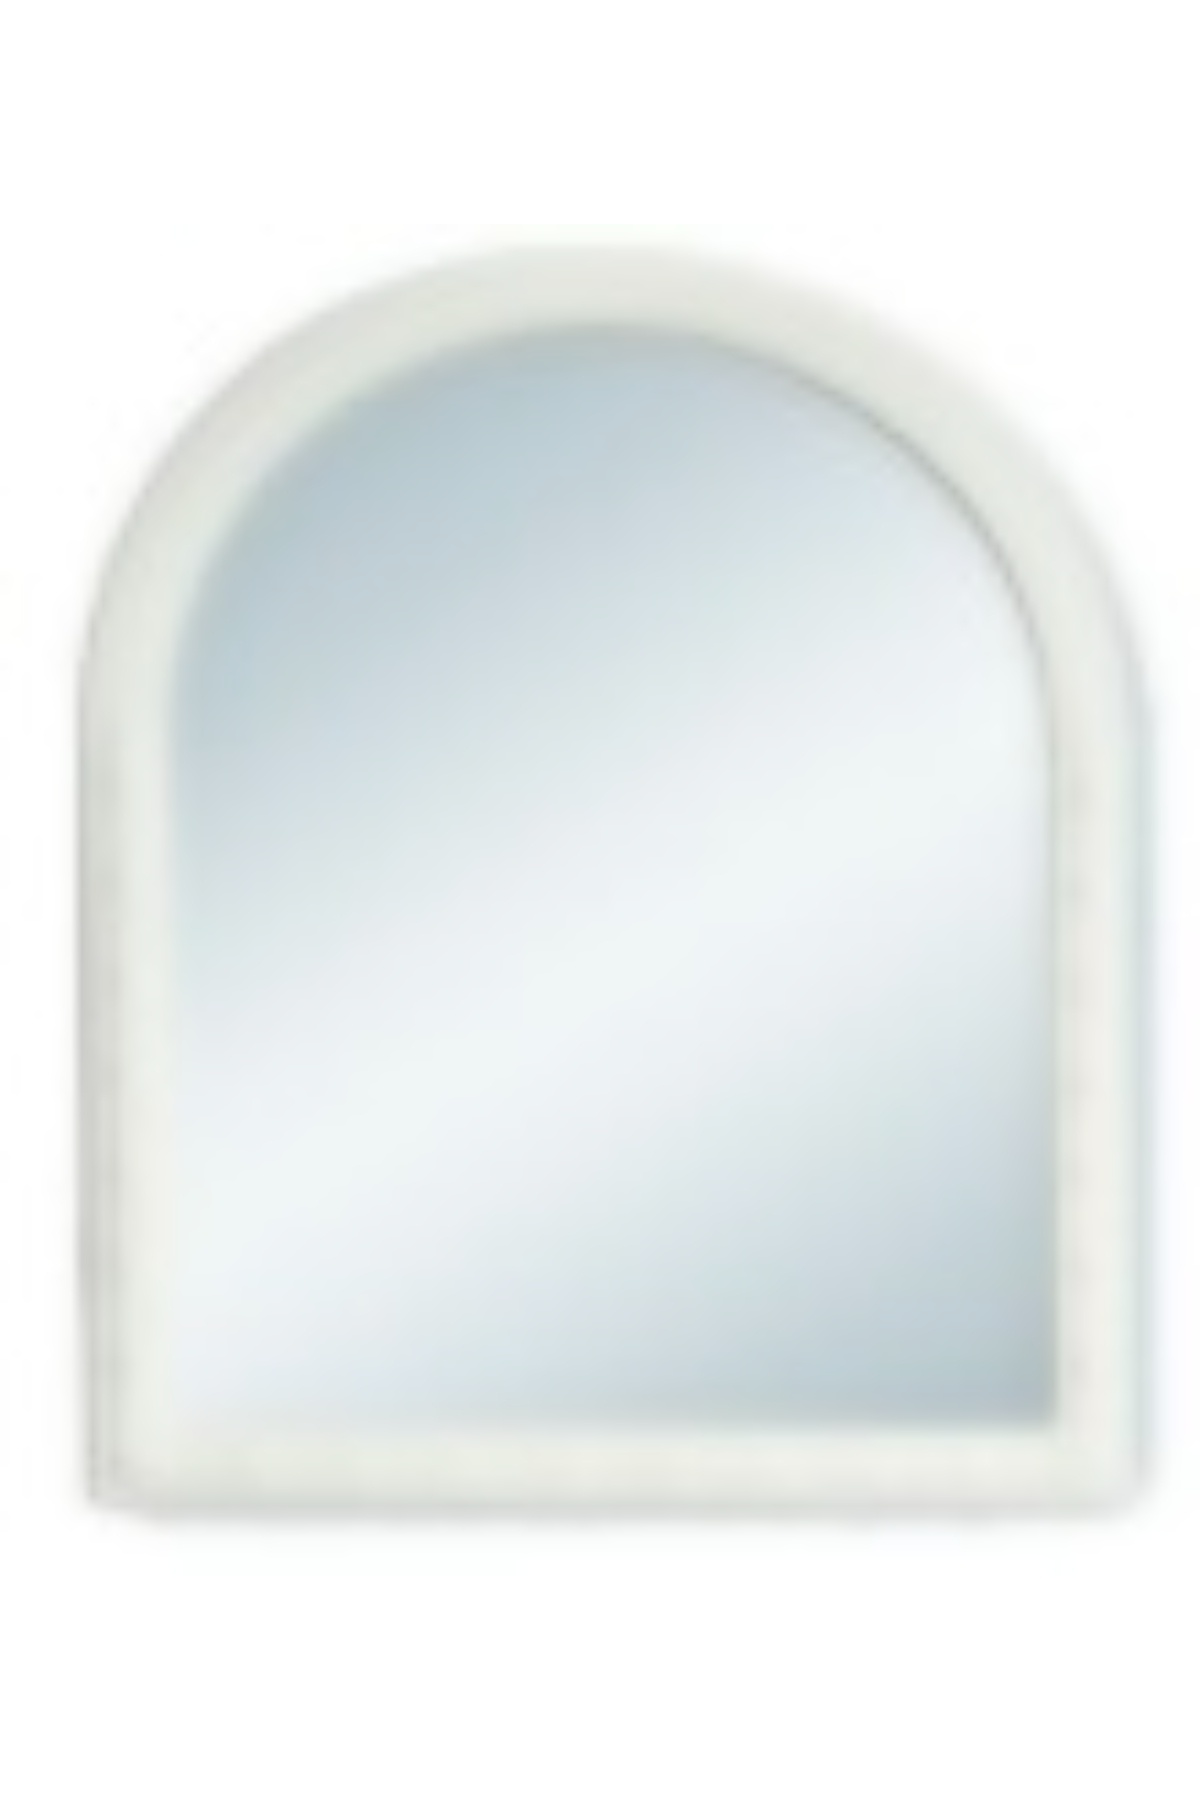 Çelik Ayna-107  Beyaz Mega Tek Ayna*10 - 17-0065 - 2345